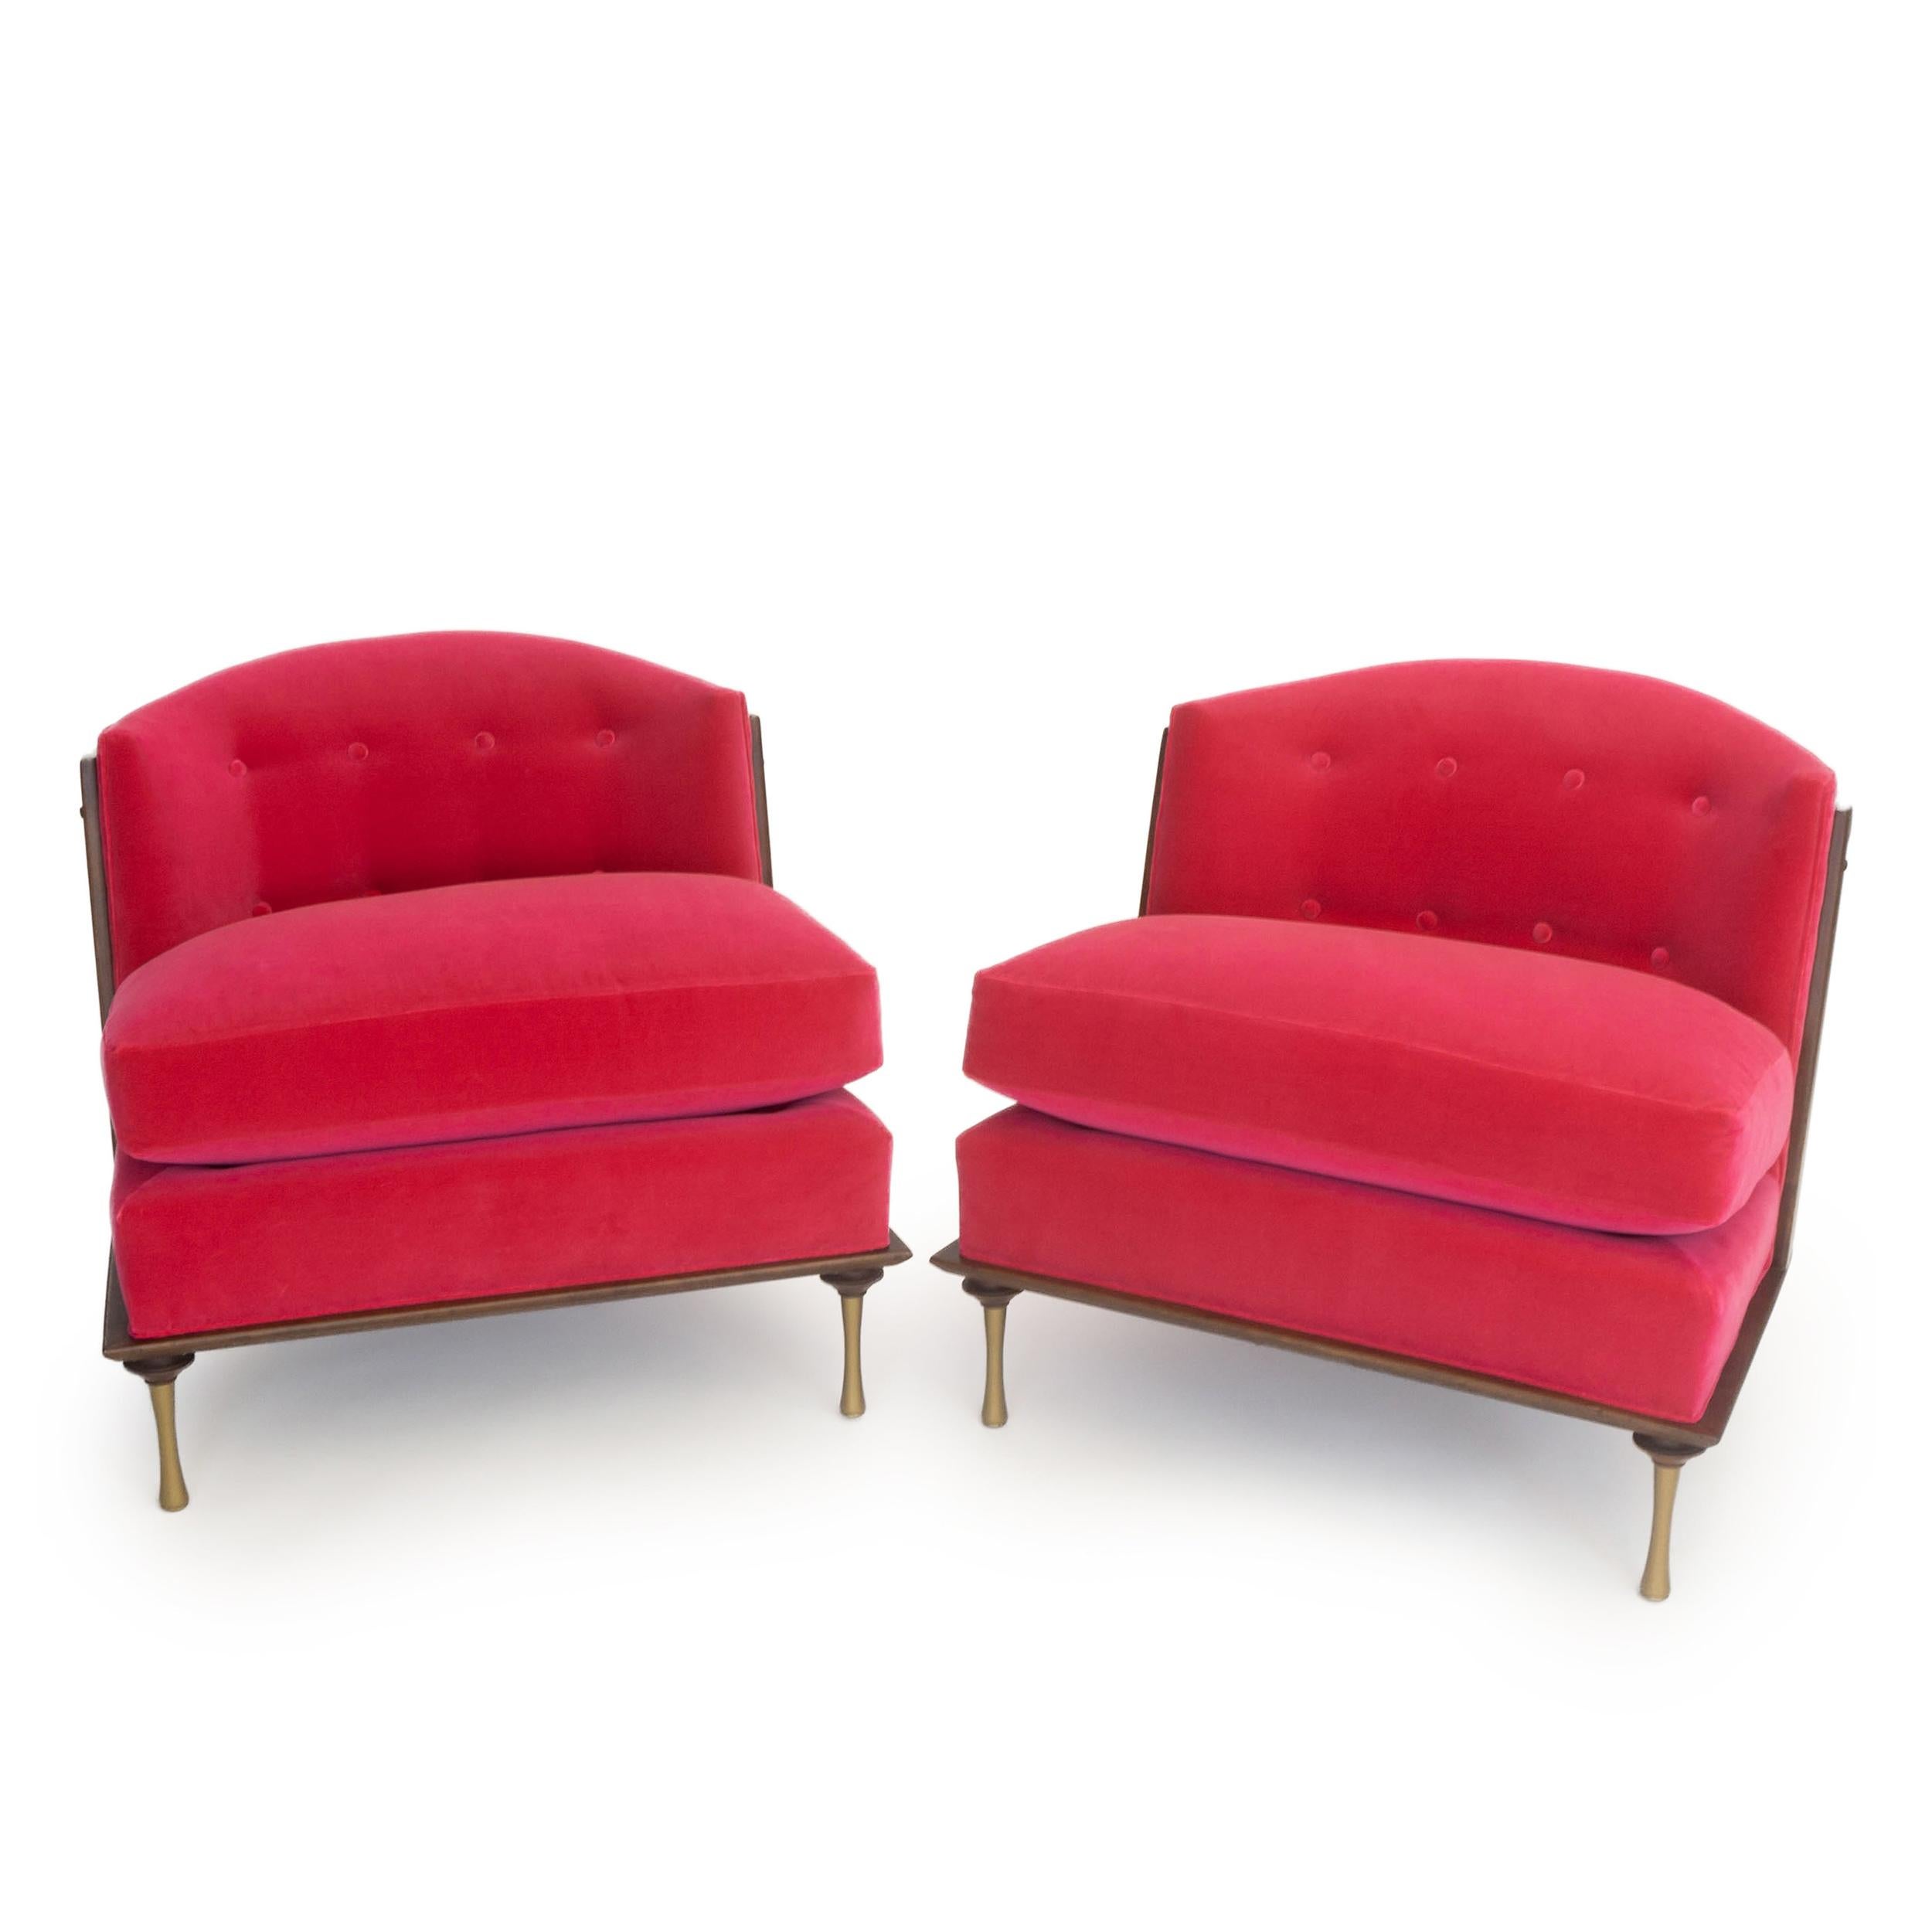 Art Deco Inspired Slipper Chair For Sale 4